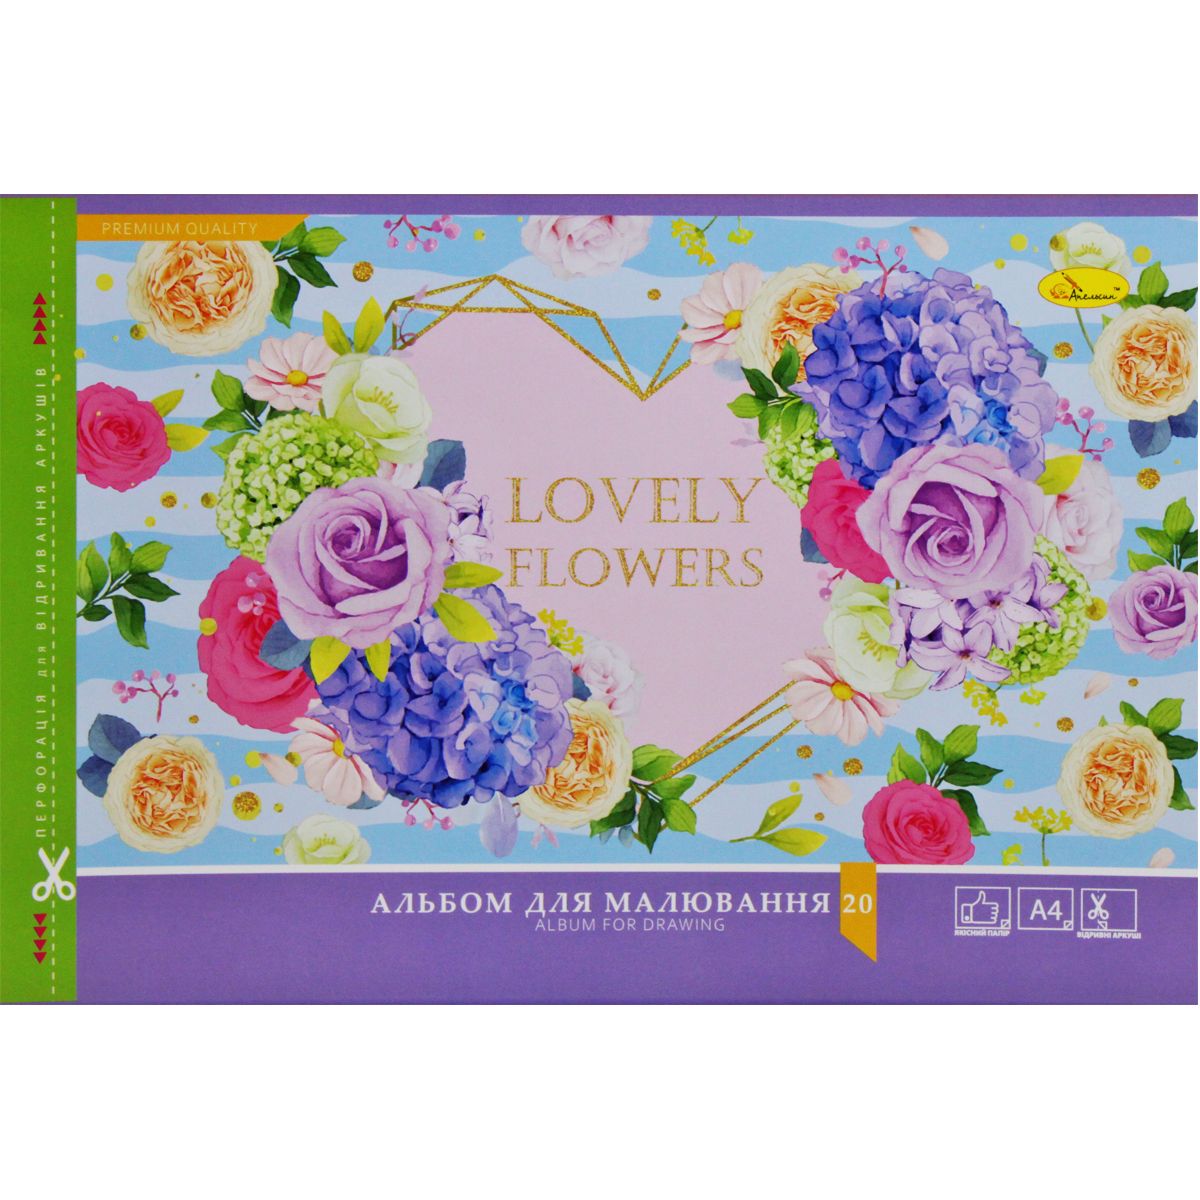 Альбом для рисования "Lovely flowers", 20 листов